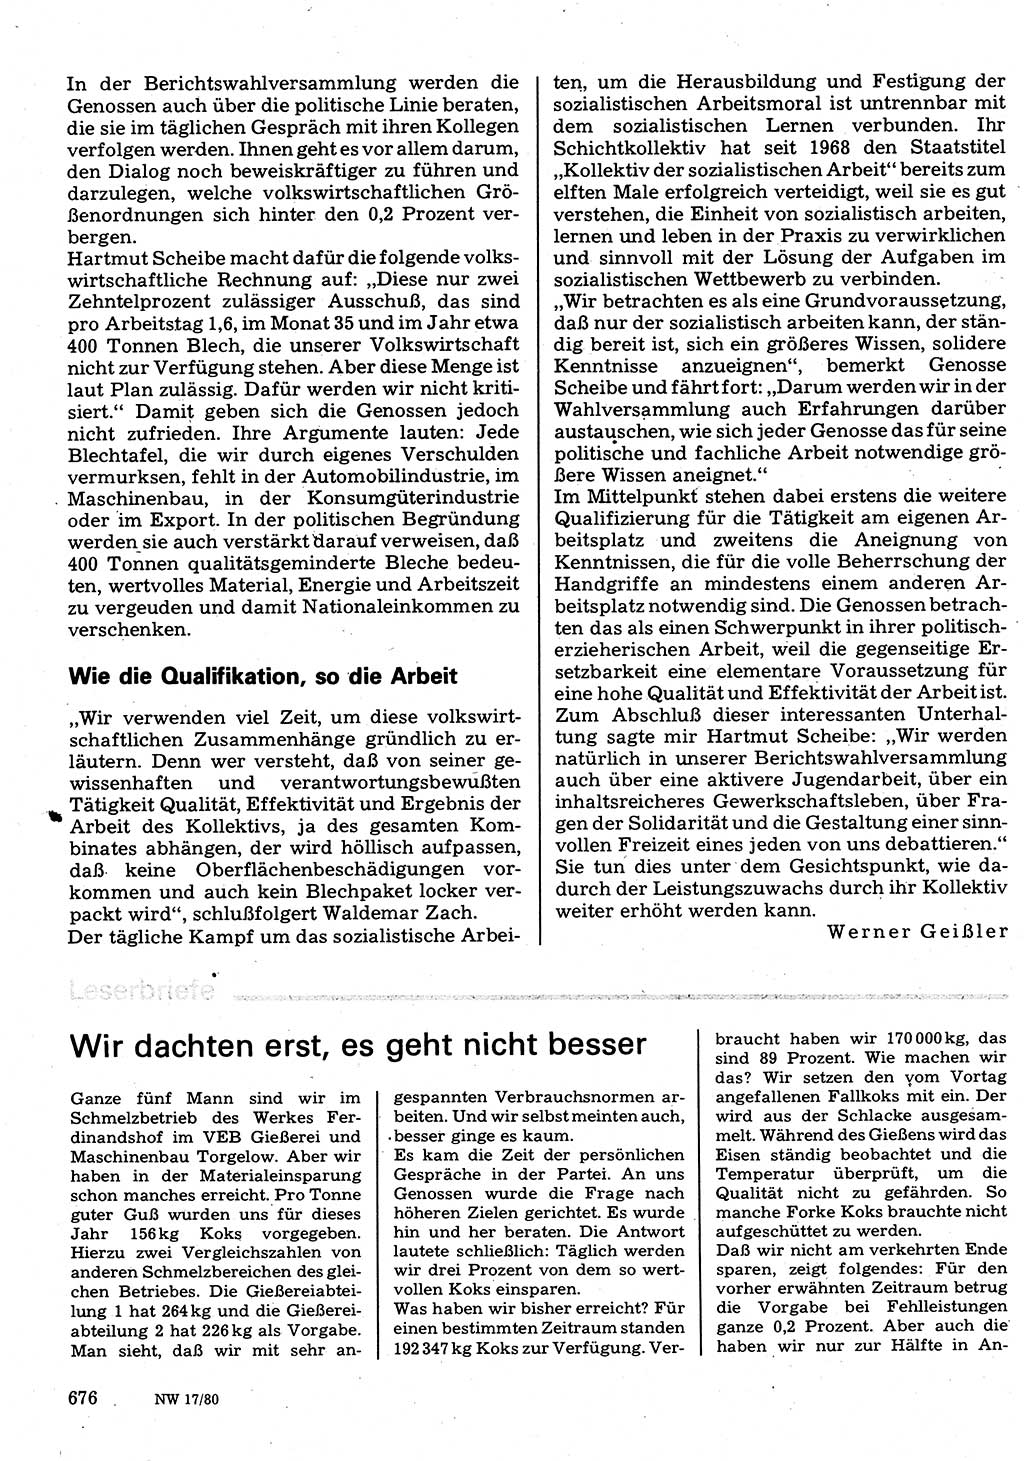 Neuer Weg (NW), Organ des Zentralkomitees (ZK) der SED (Sozialistische Einheitspartei Deutschlands) für Fragen des Parteilebens, 35. Jahrgang [Deutsche Demokratische Republik (DDR)] 1980, Seite 676 (NW ZK SED DDR 1980, S. 676)